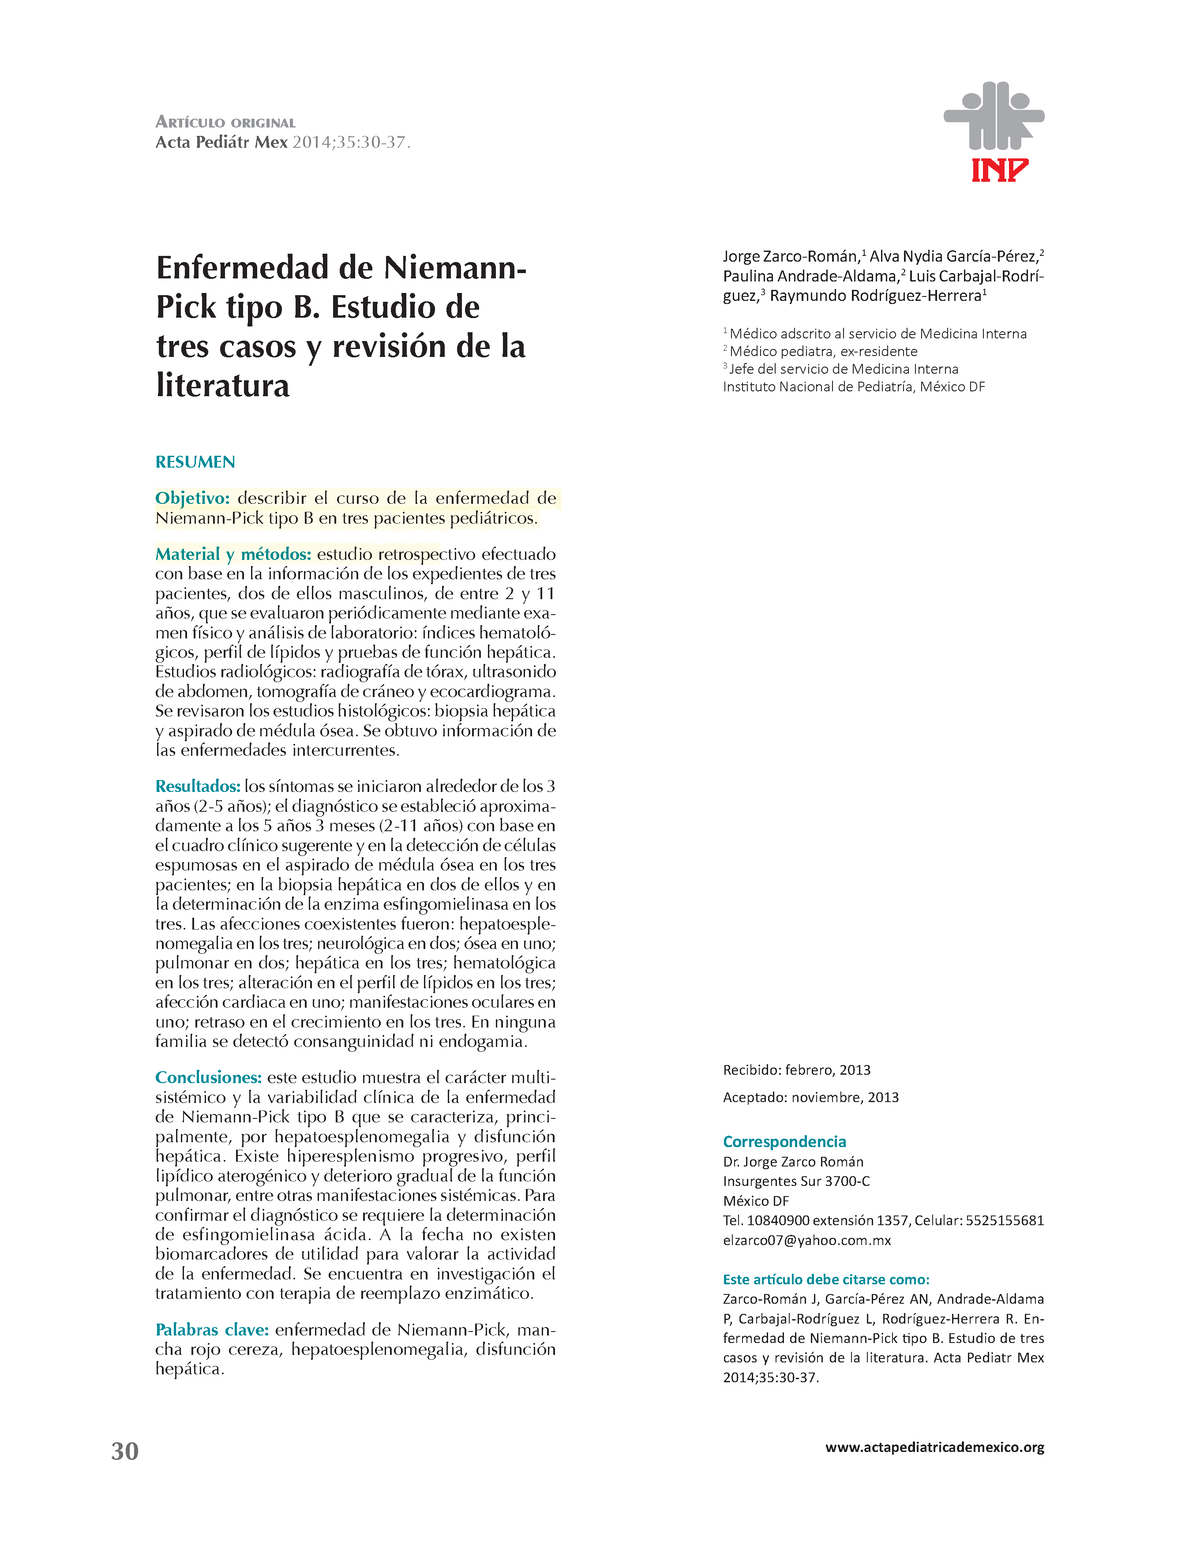 Enfermedad de Niemann-Pick tipo B: Estudio de tres casos y revisión de la  literatura